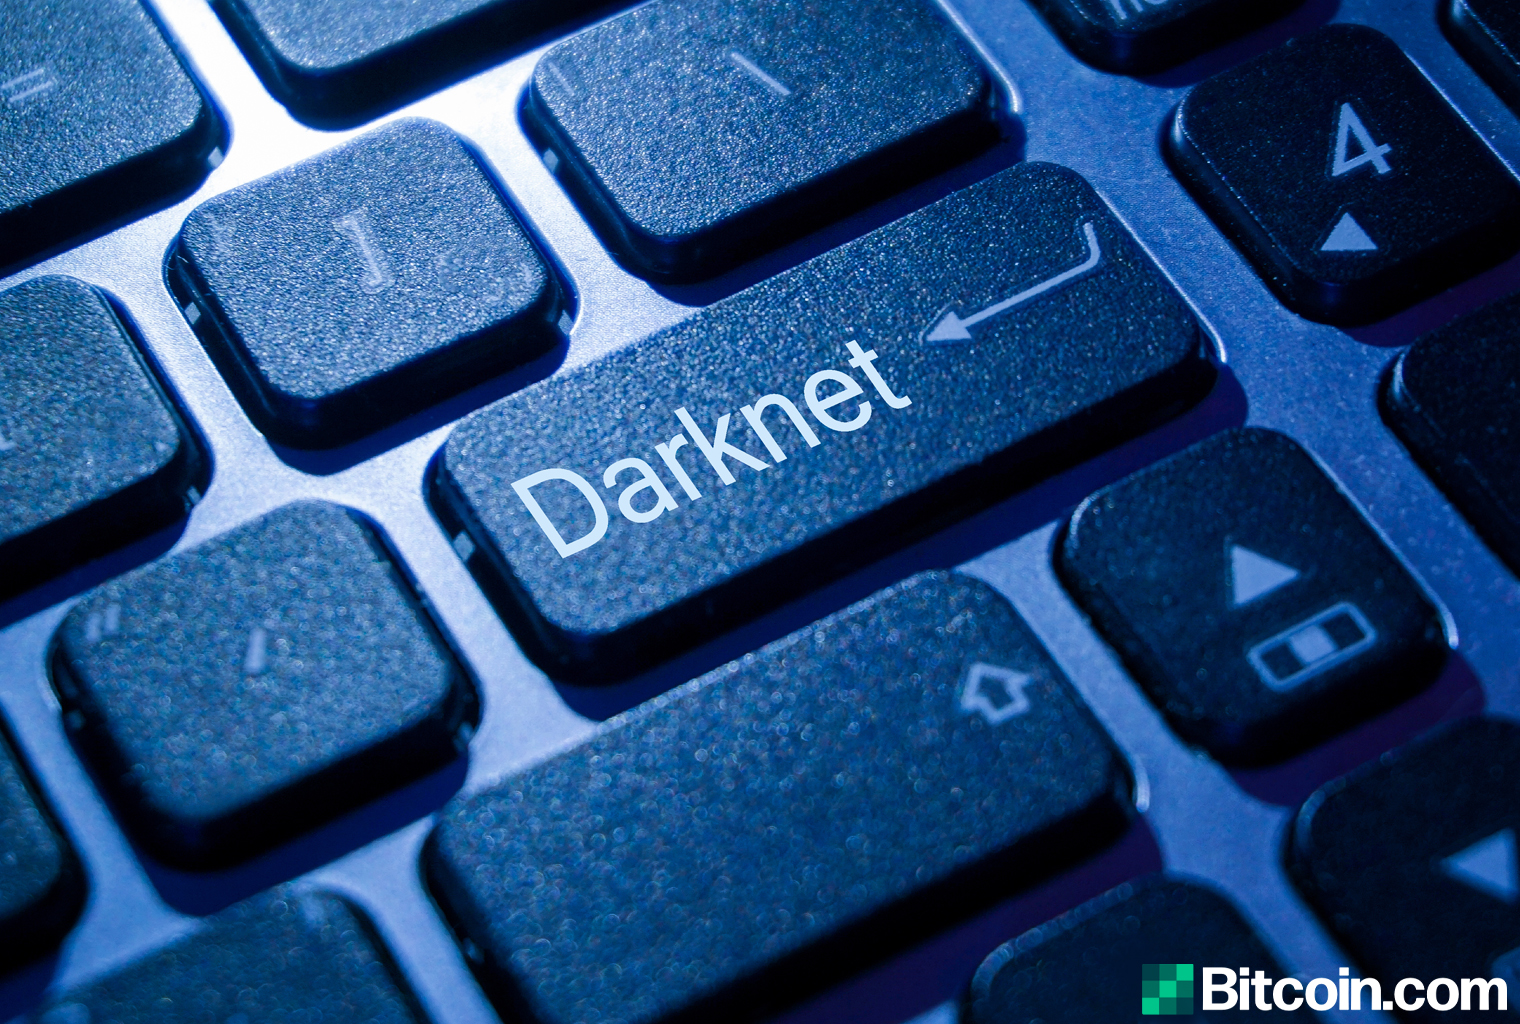 Cannazon darknet market